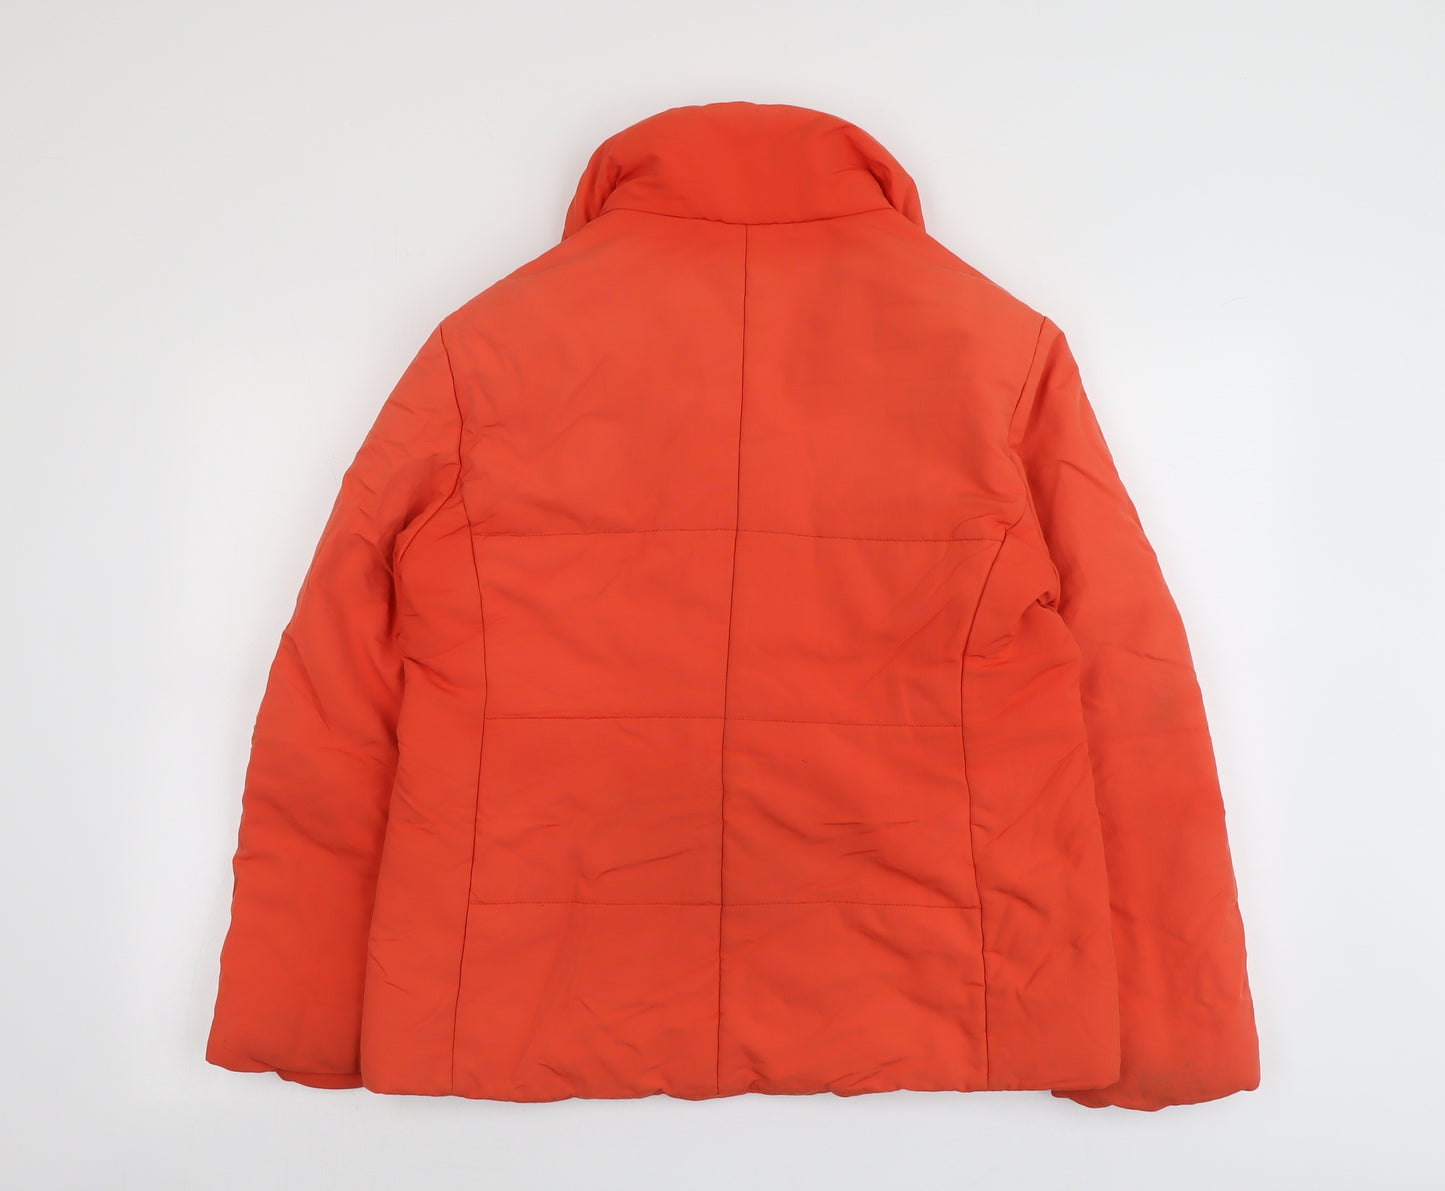 Belfe Womens Orange Puffer Jacket Jacket Size 10 Zip